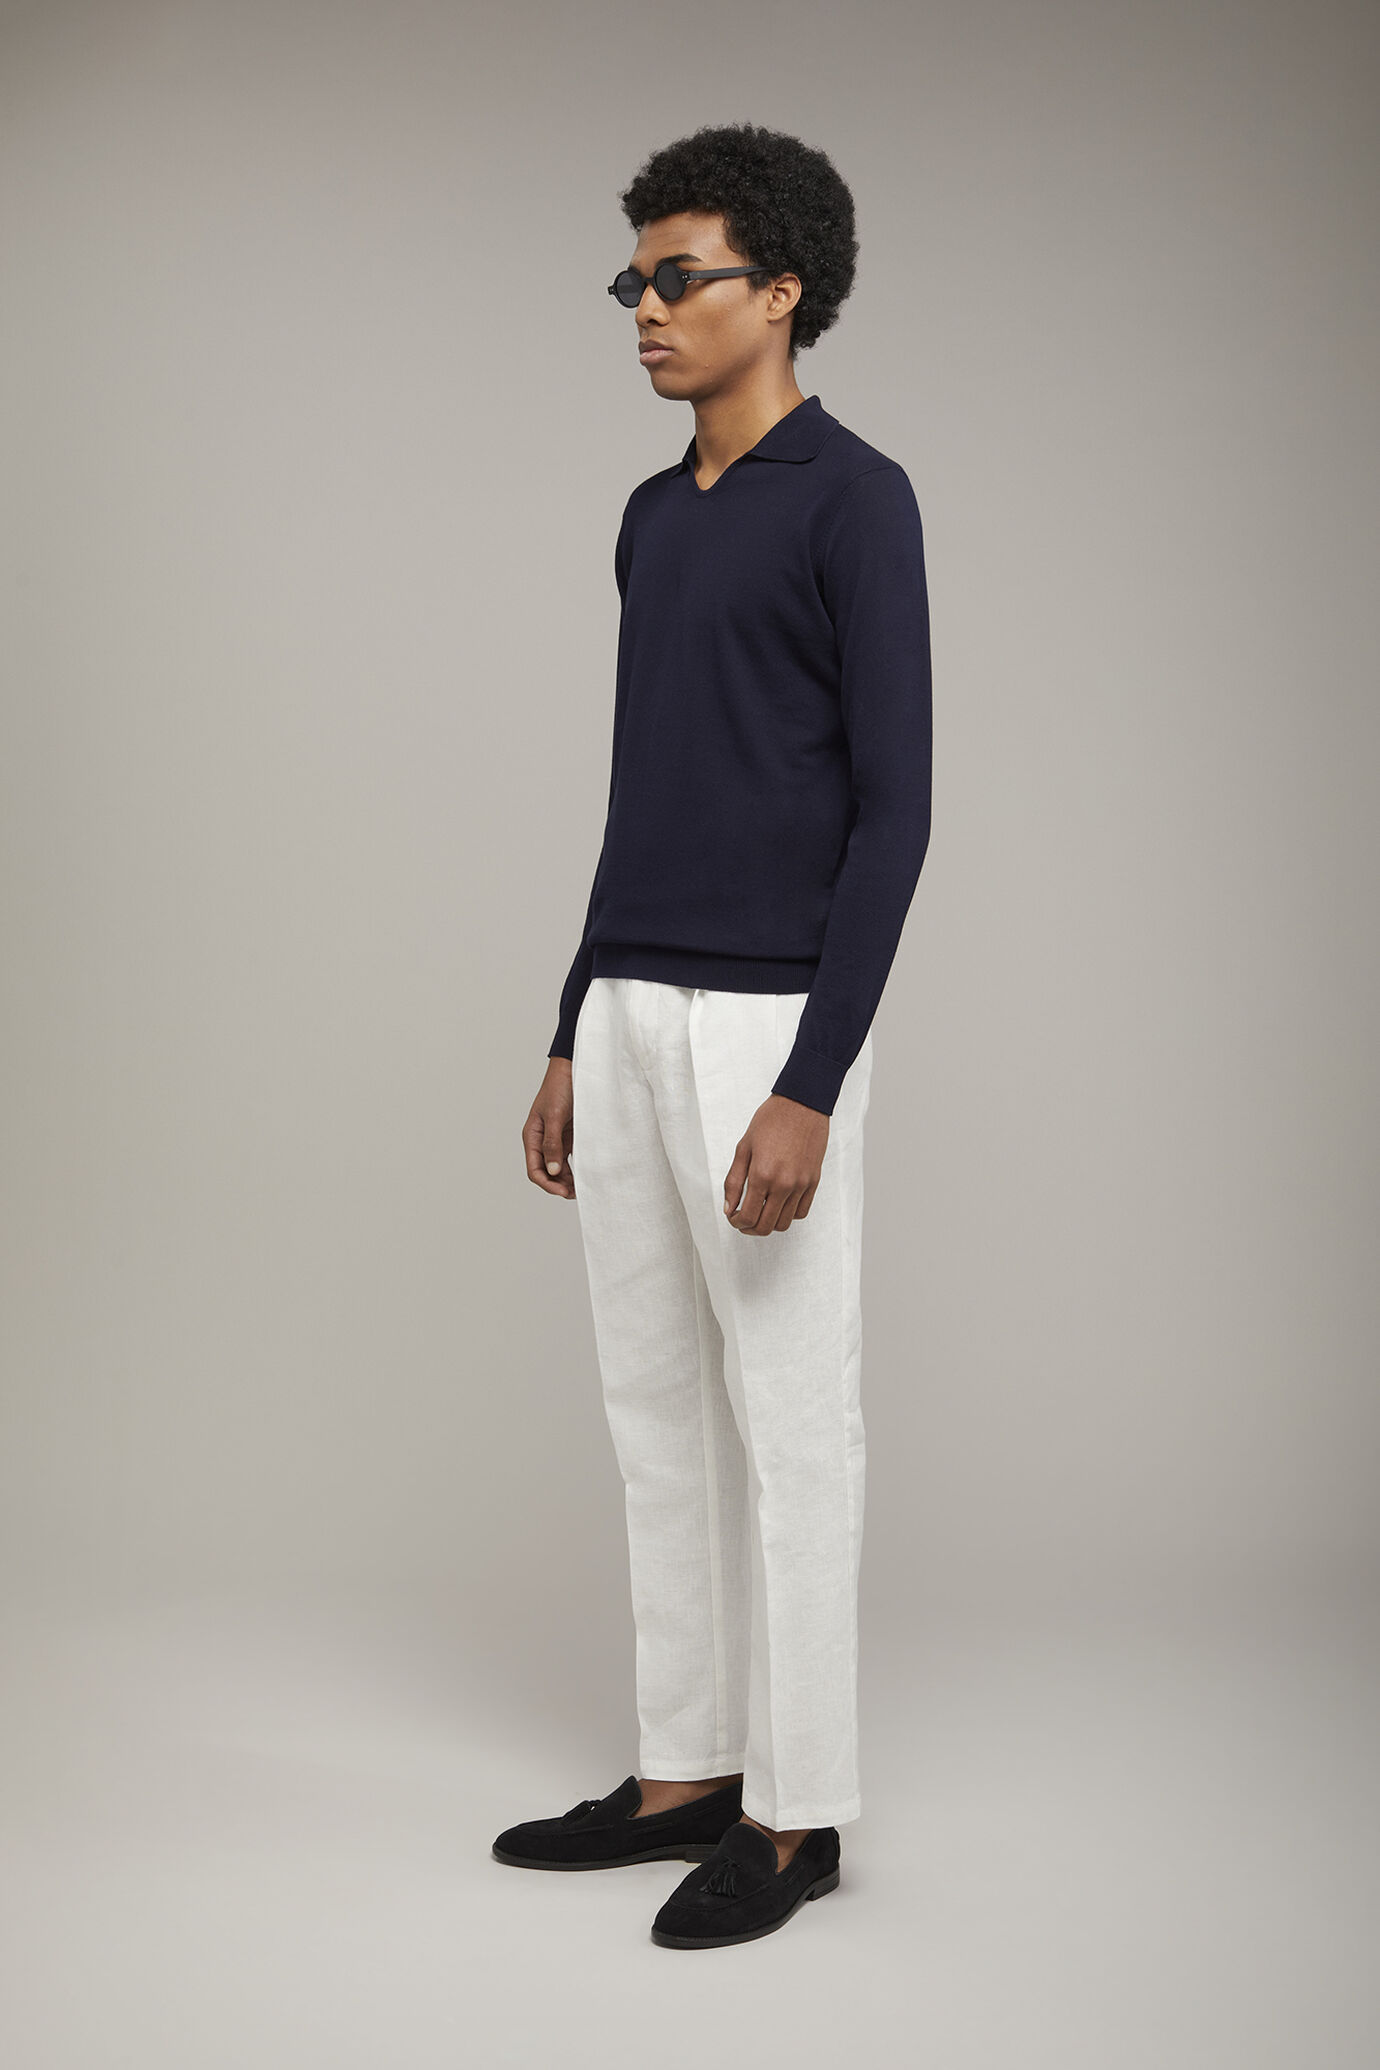 Herren-Poloshirt mit V-Ausschnitt aus 100 % Baumwollstrick und langen Ärmeln in normaler Passform image number 1